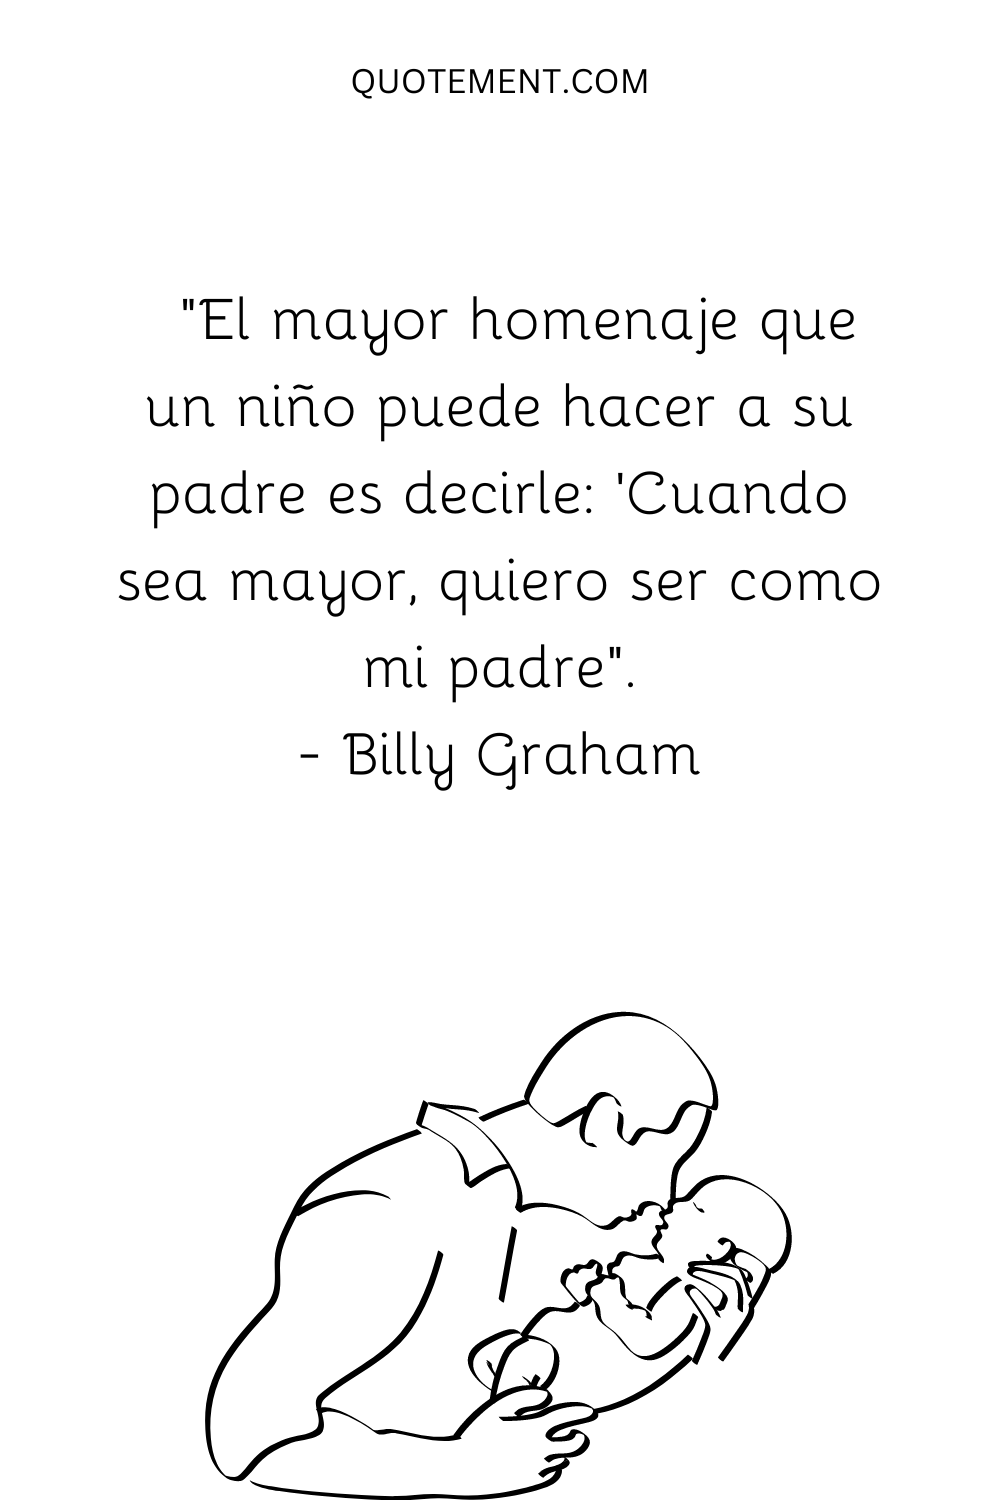 "El mayor tributo que un niño puede dar a su padre es decir: 'Cuando sea mayor, quiero ser como mi padre'". - Billy Graham